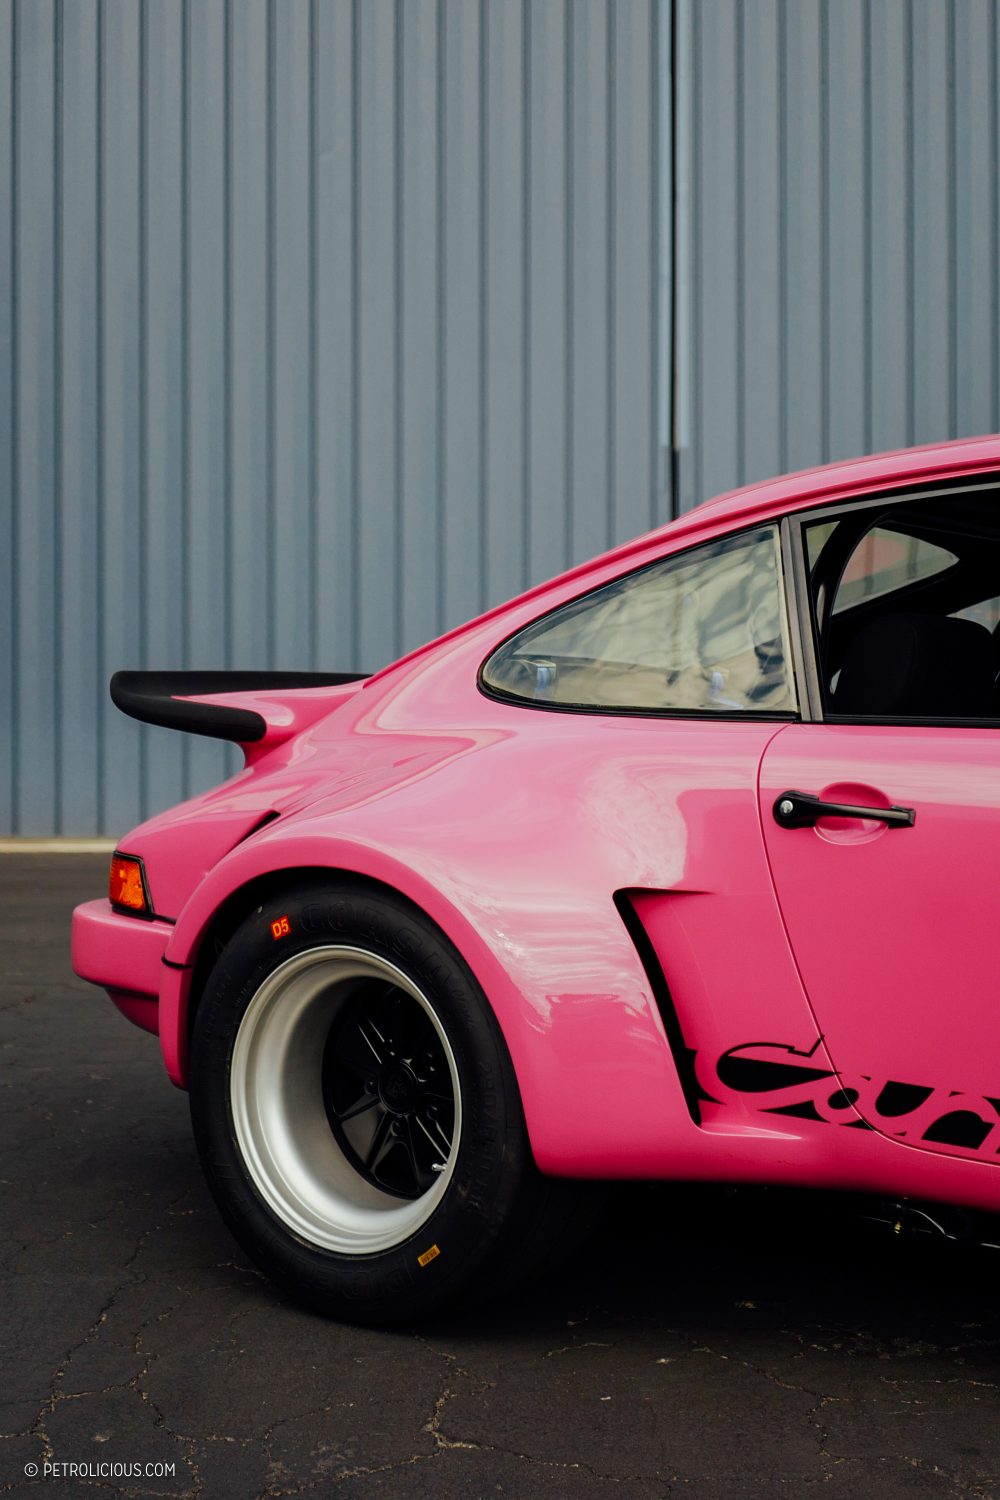 bao lakiha Spicer recuerda el extraño momento en que Mike Tyson le regaló un Porsche 930 rosa a cambio de su amor 653e3007aab0e Lakiha Spicer recuerda el 'extraño' momento en que Mike Tyson le regaló un Porsche 930 rosa a cambio de su amor.